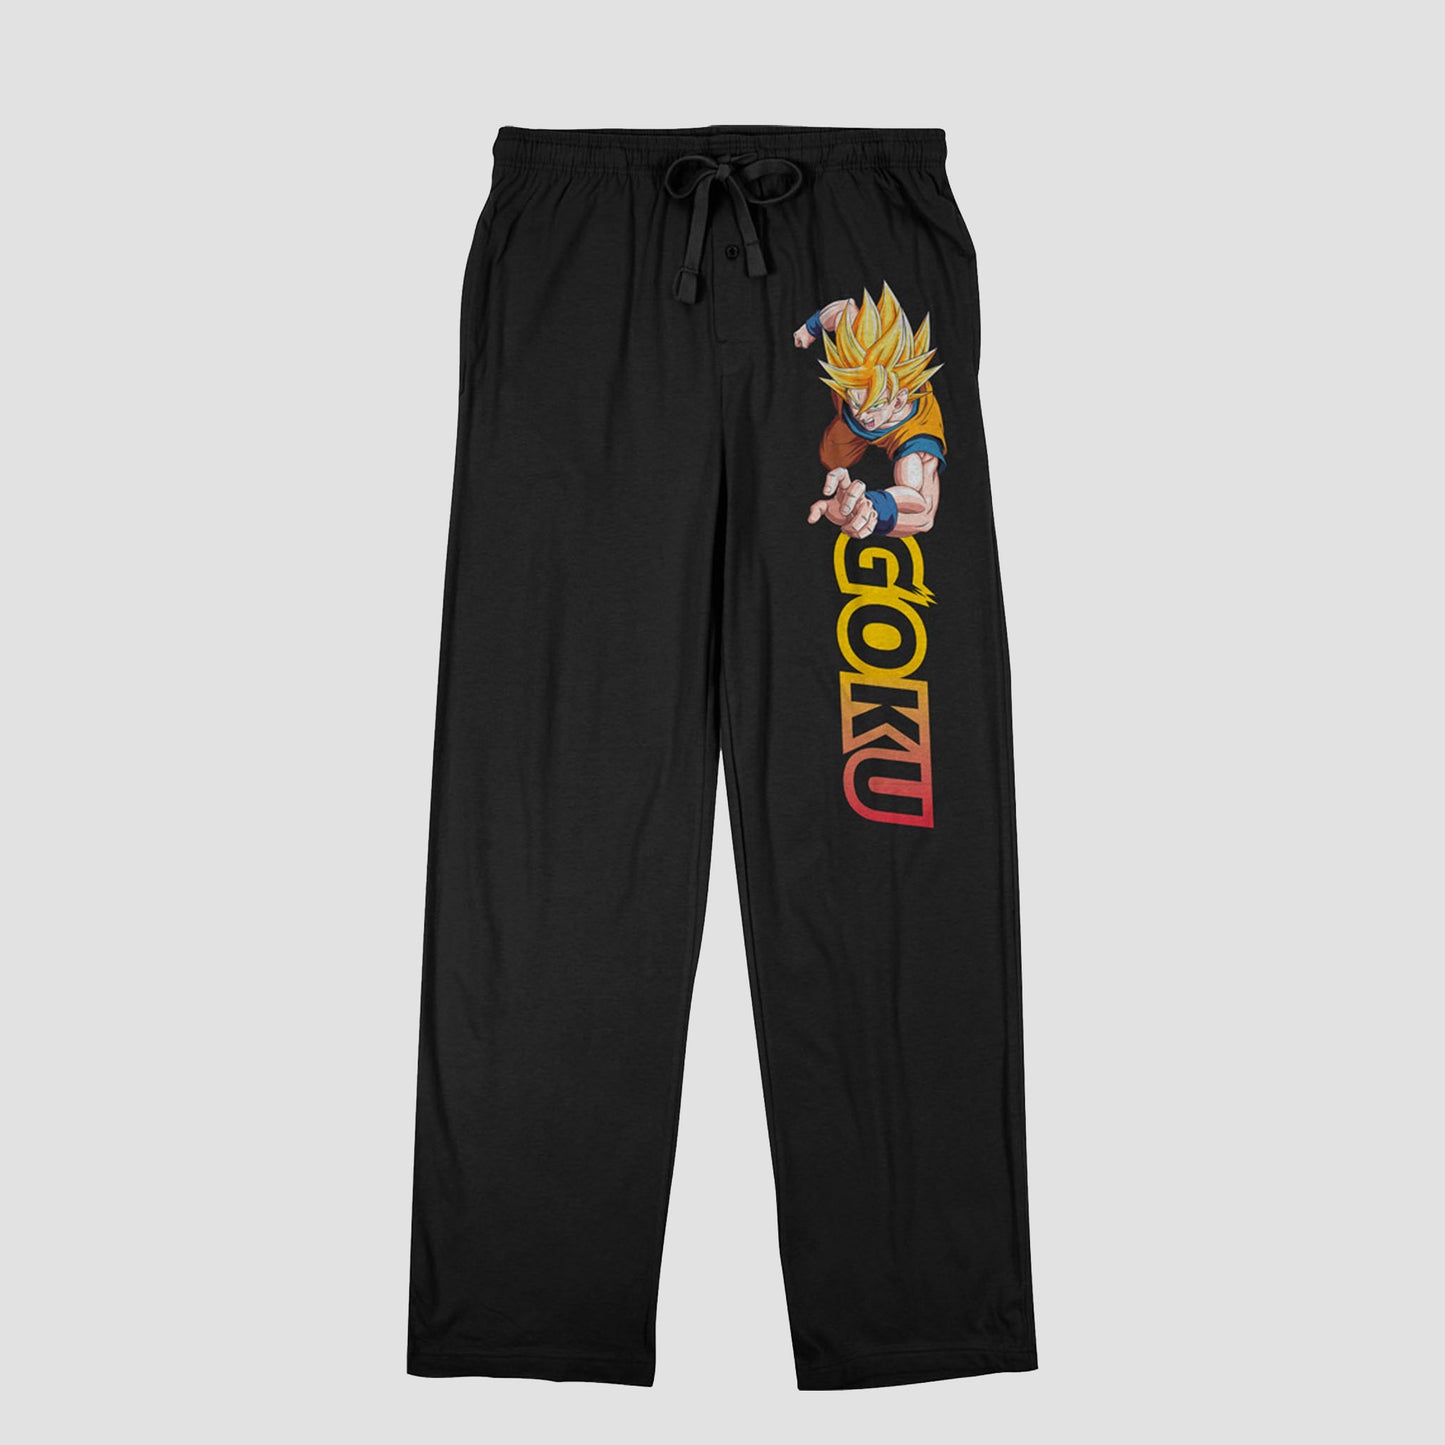 Super Saiyan Goku (Dragon Ball) Lounge Pants